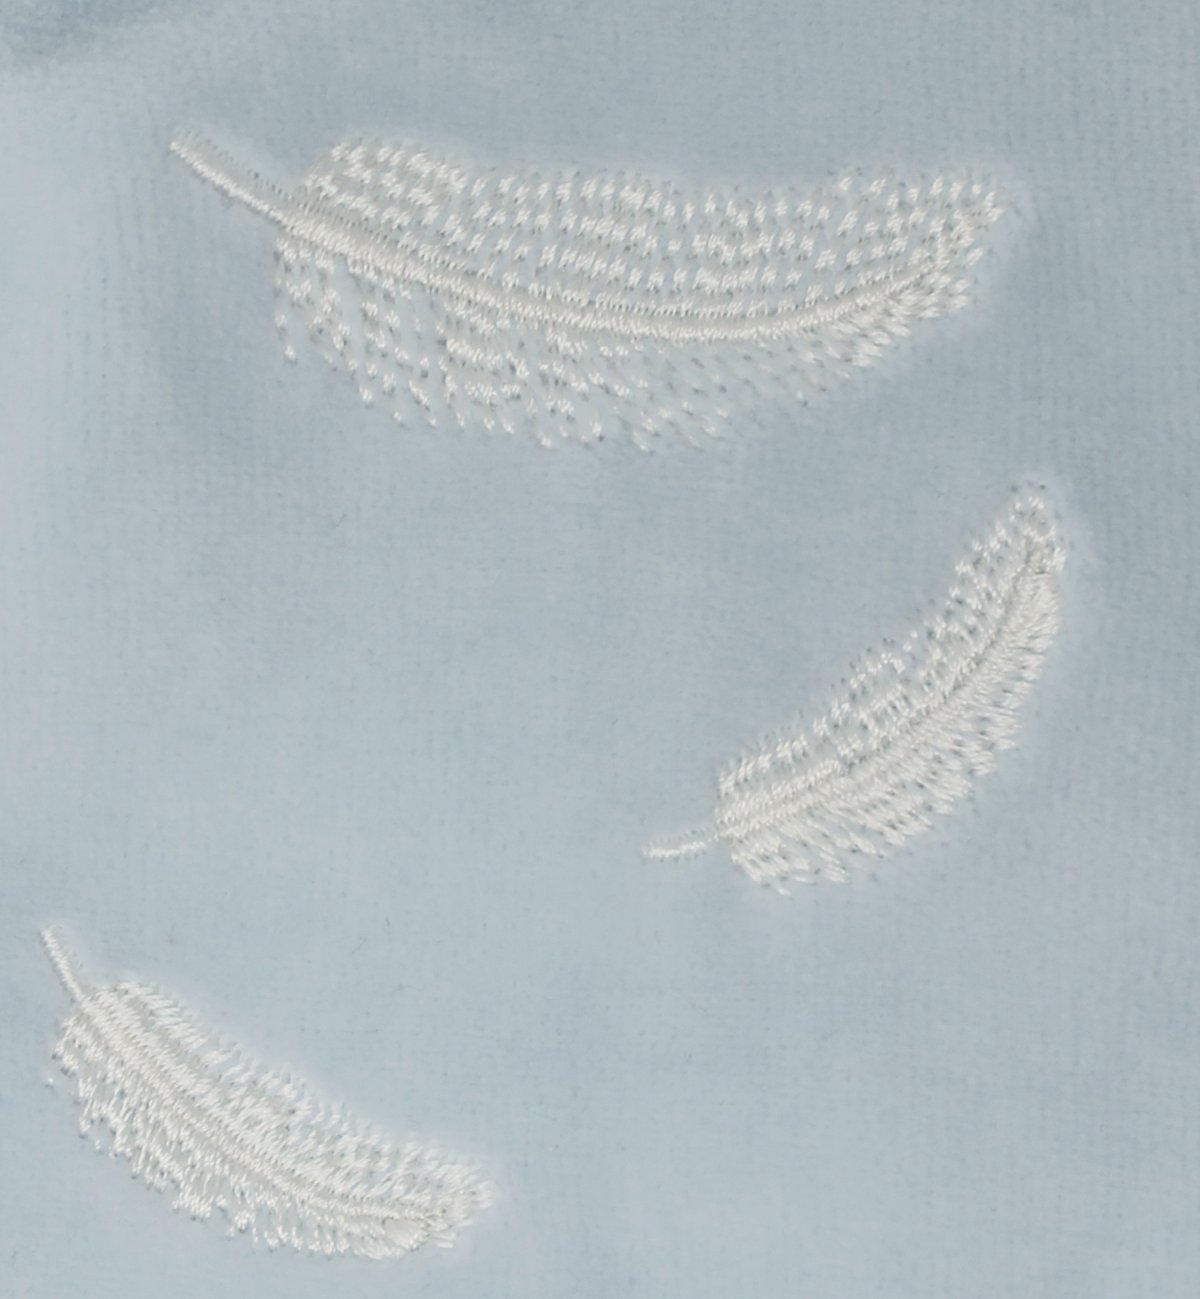 Pijama de bebé en Algodón Orgánico con estampados de plumas blancas Kadolis